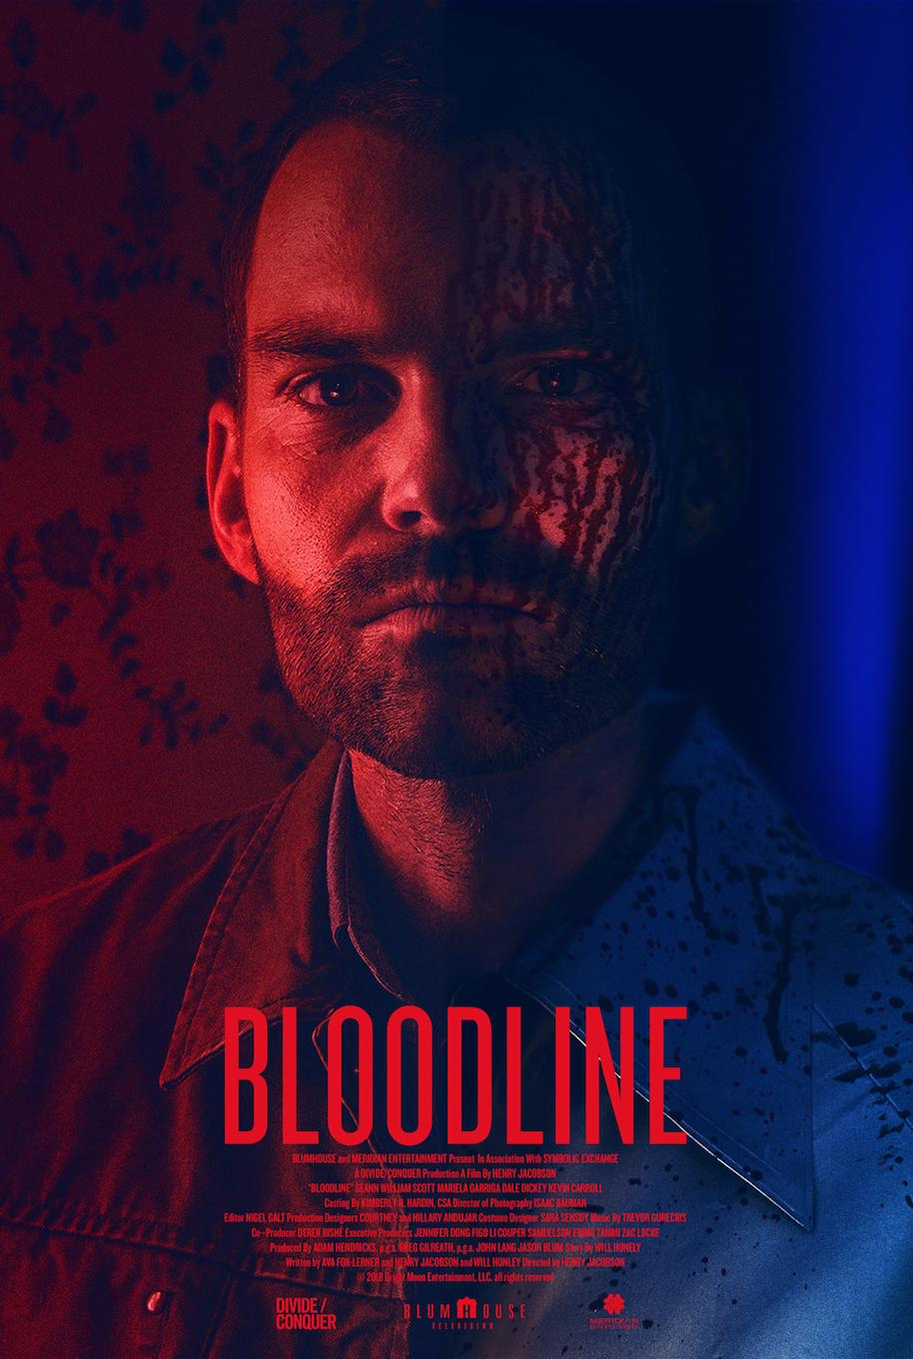 Bloodline, Seann William Scott, poster